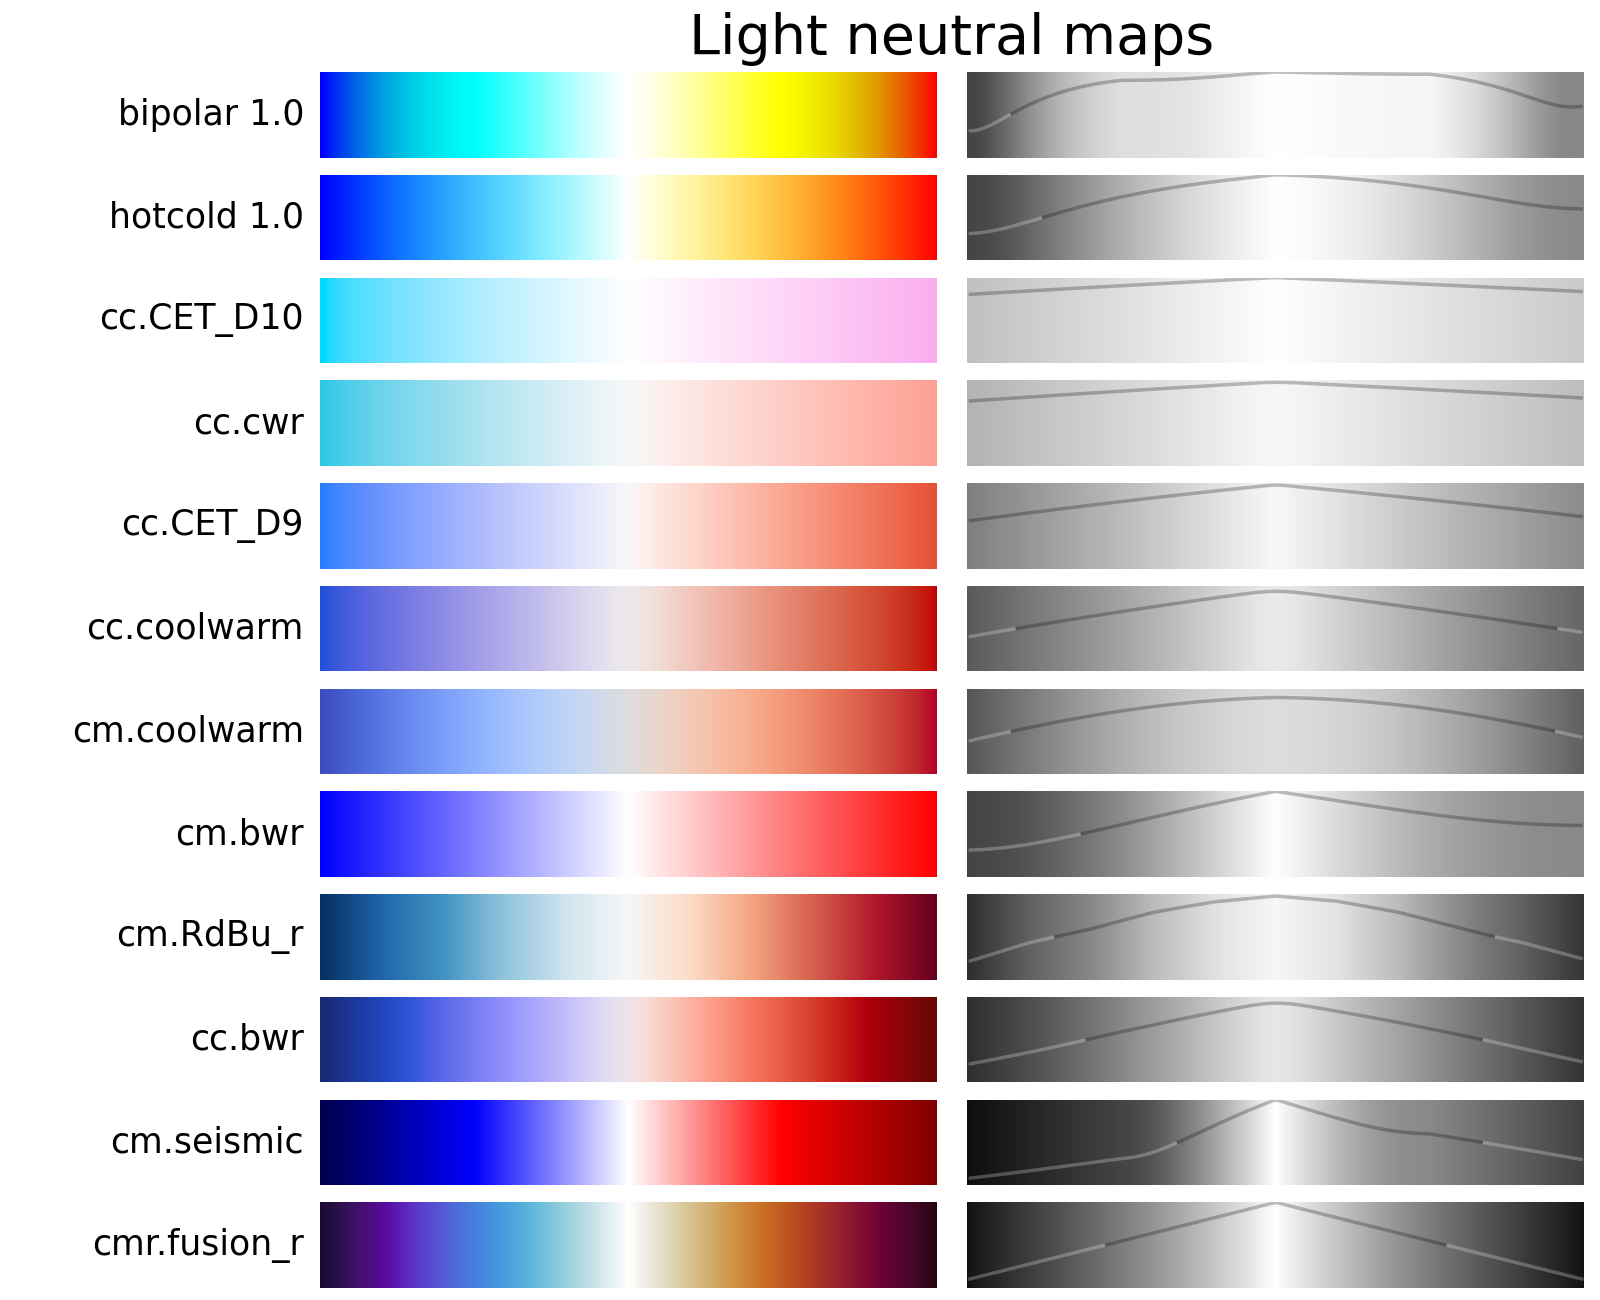 bipolar colormap vs CET_D10, cwr, CET_D9, coolwarm, bwr, RdBu, seismic, fusion